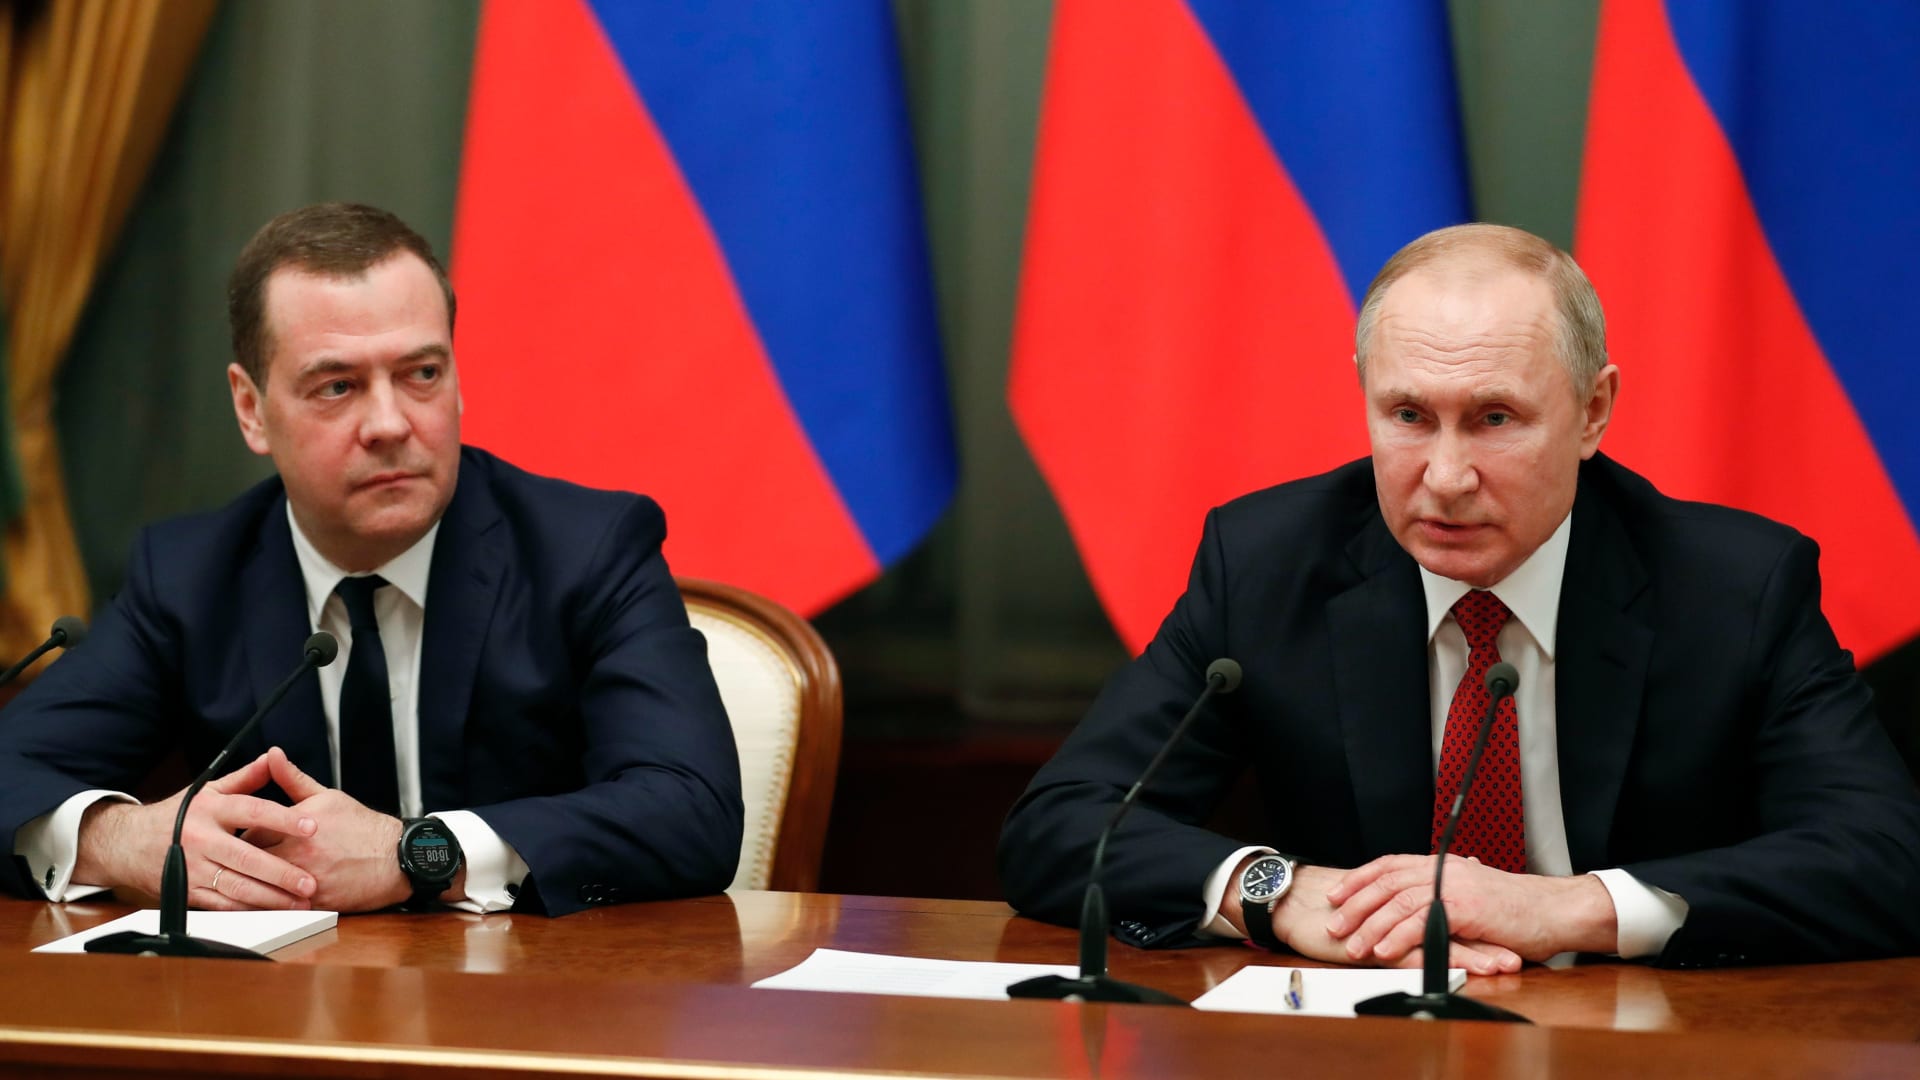 الحكومة الروسية تستقيل.. وبوتين يطرح تعديلات دستورية تتضمن نقل صلاحيات للبرلمان